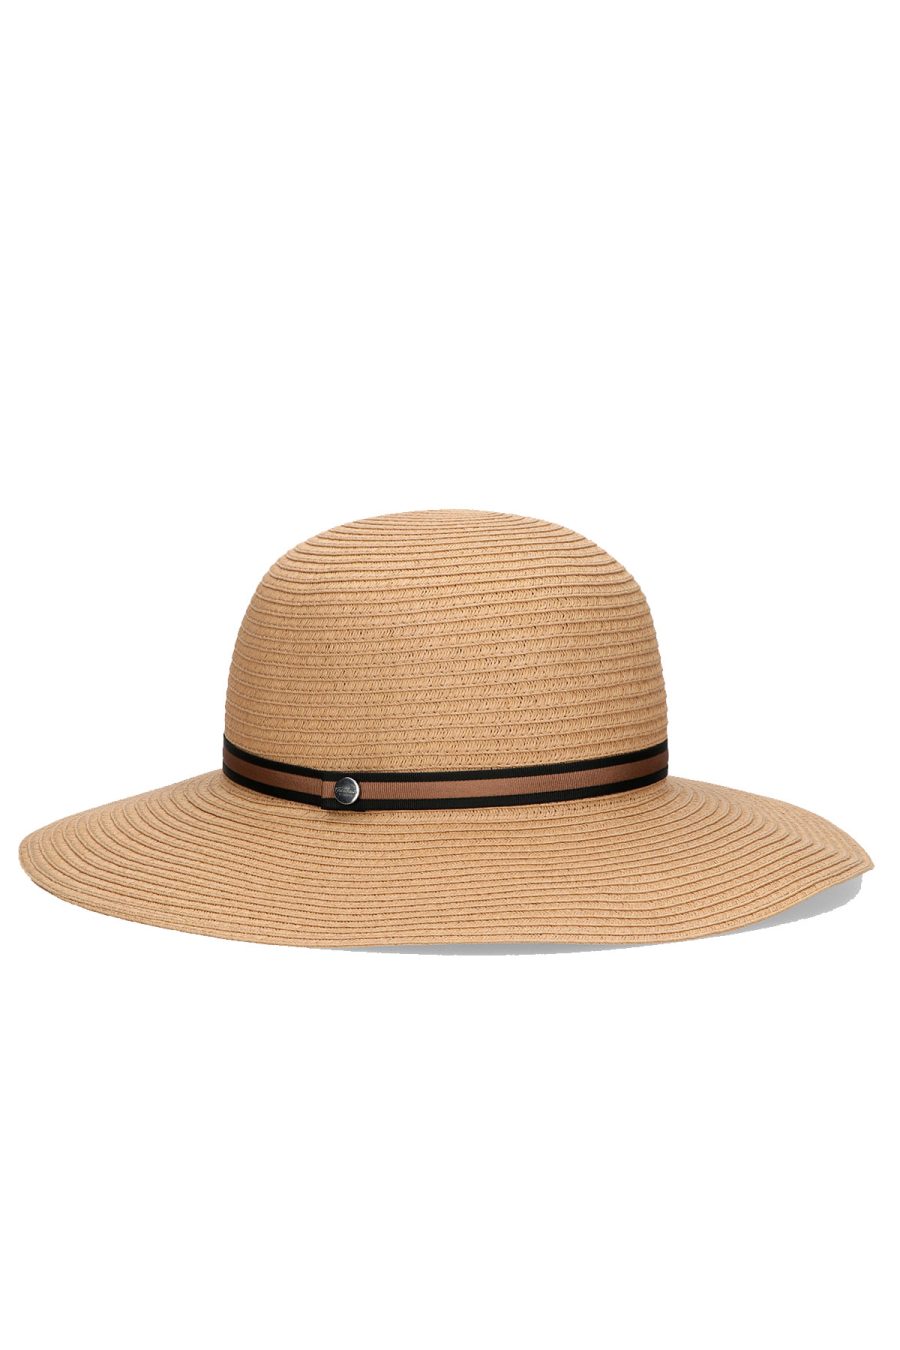 Borsalino Hats Natural